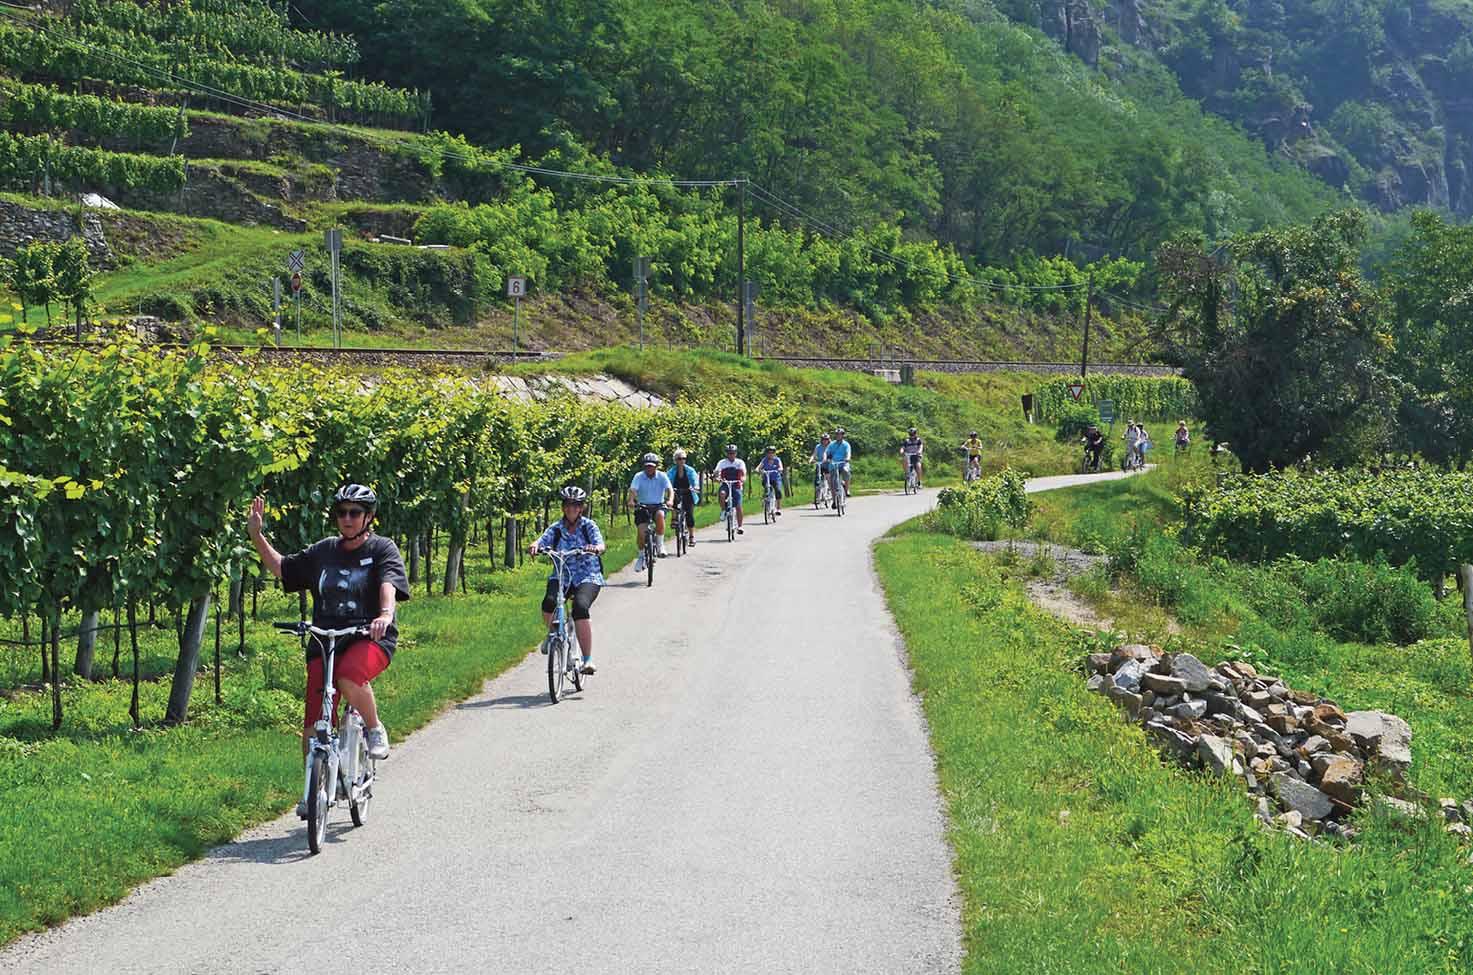 Group of people on a bike ride between vineyards in Austria